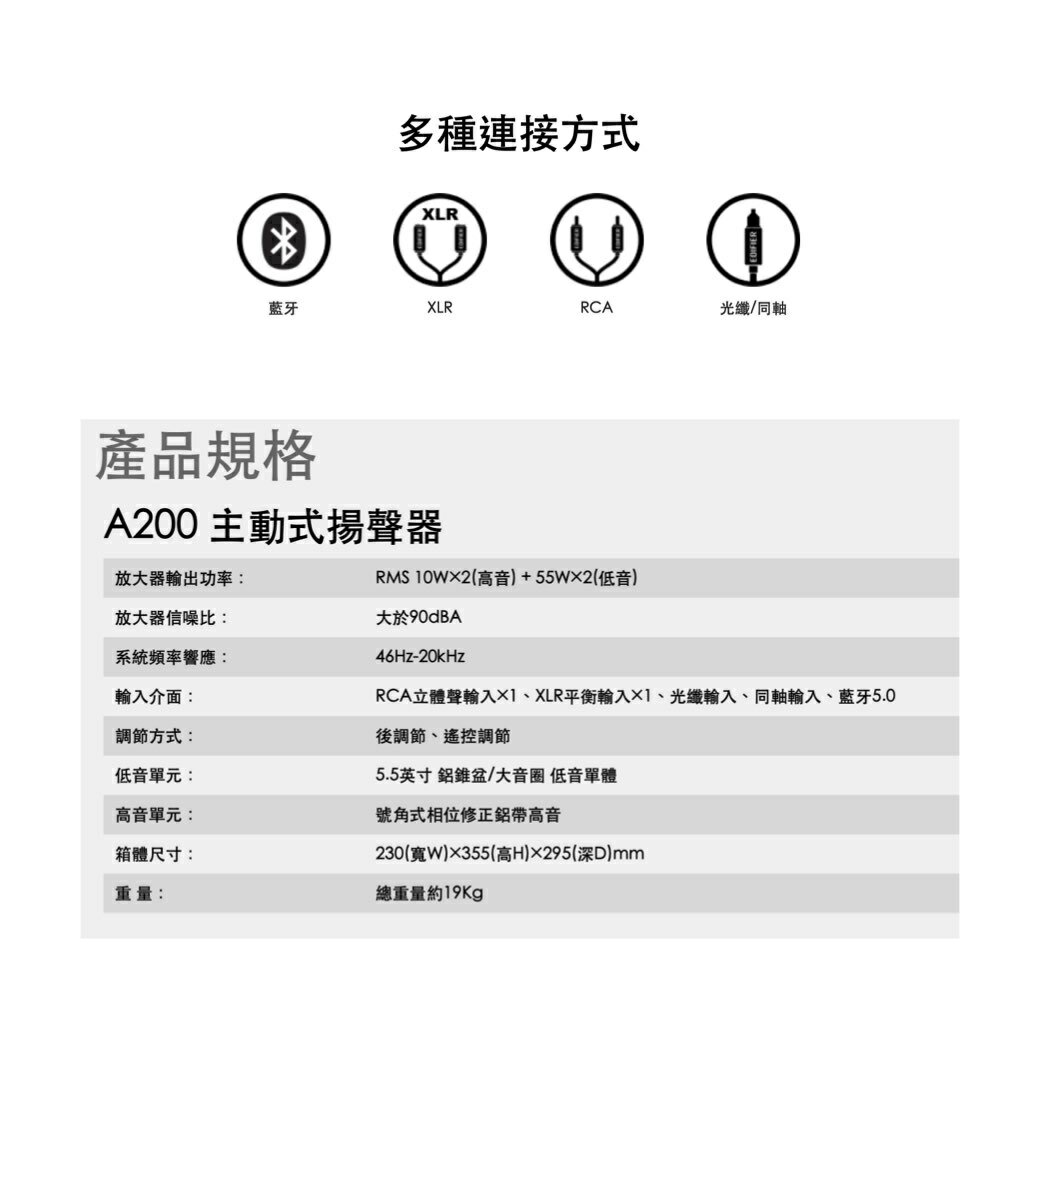 台南專賣店 AIRPULSE A200 2.0聲道 藍牙喇叭 台灣公司貨 6